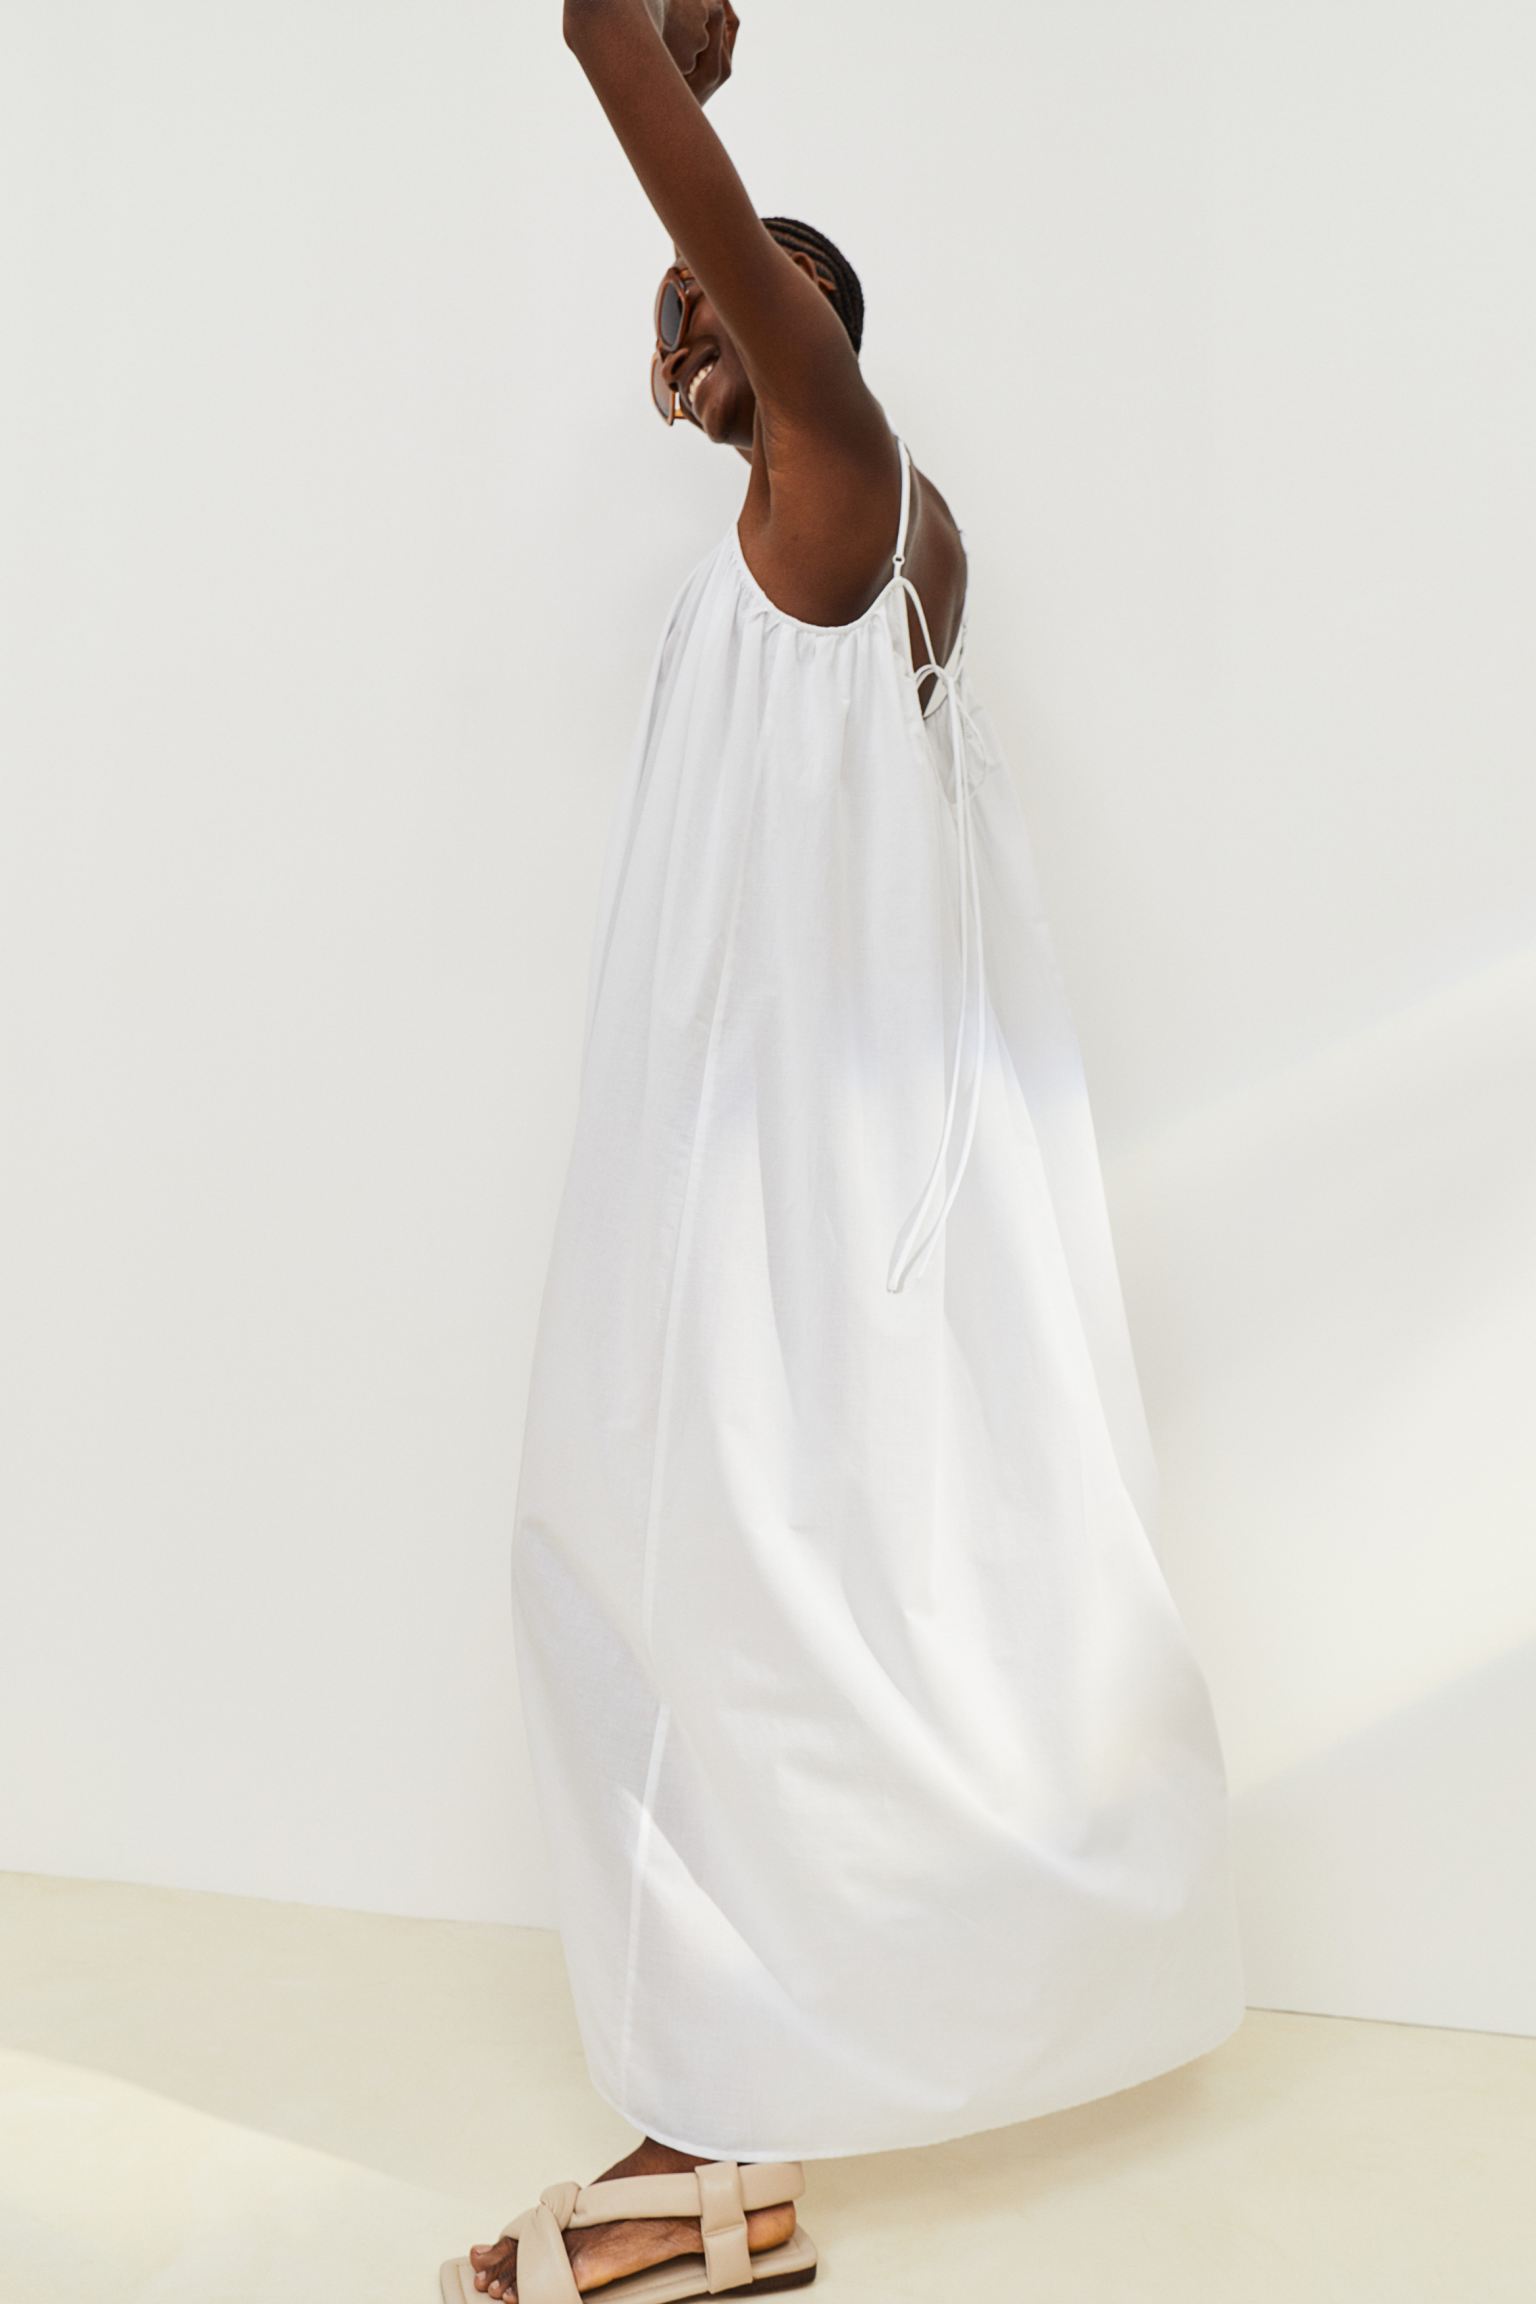 Hvit kjole med dyp rygg